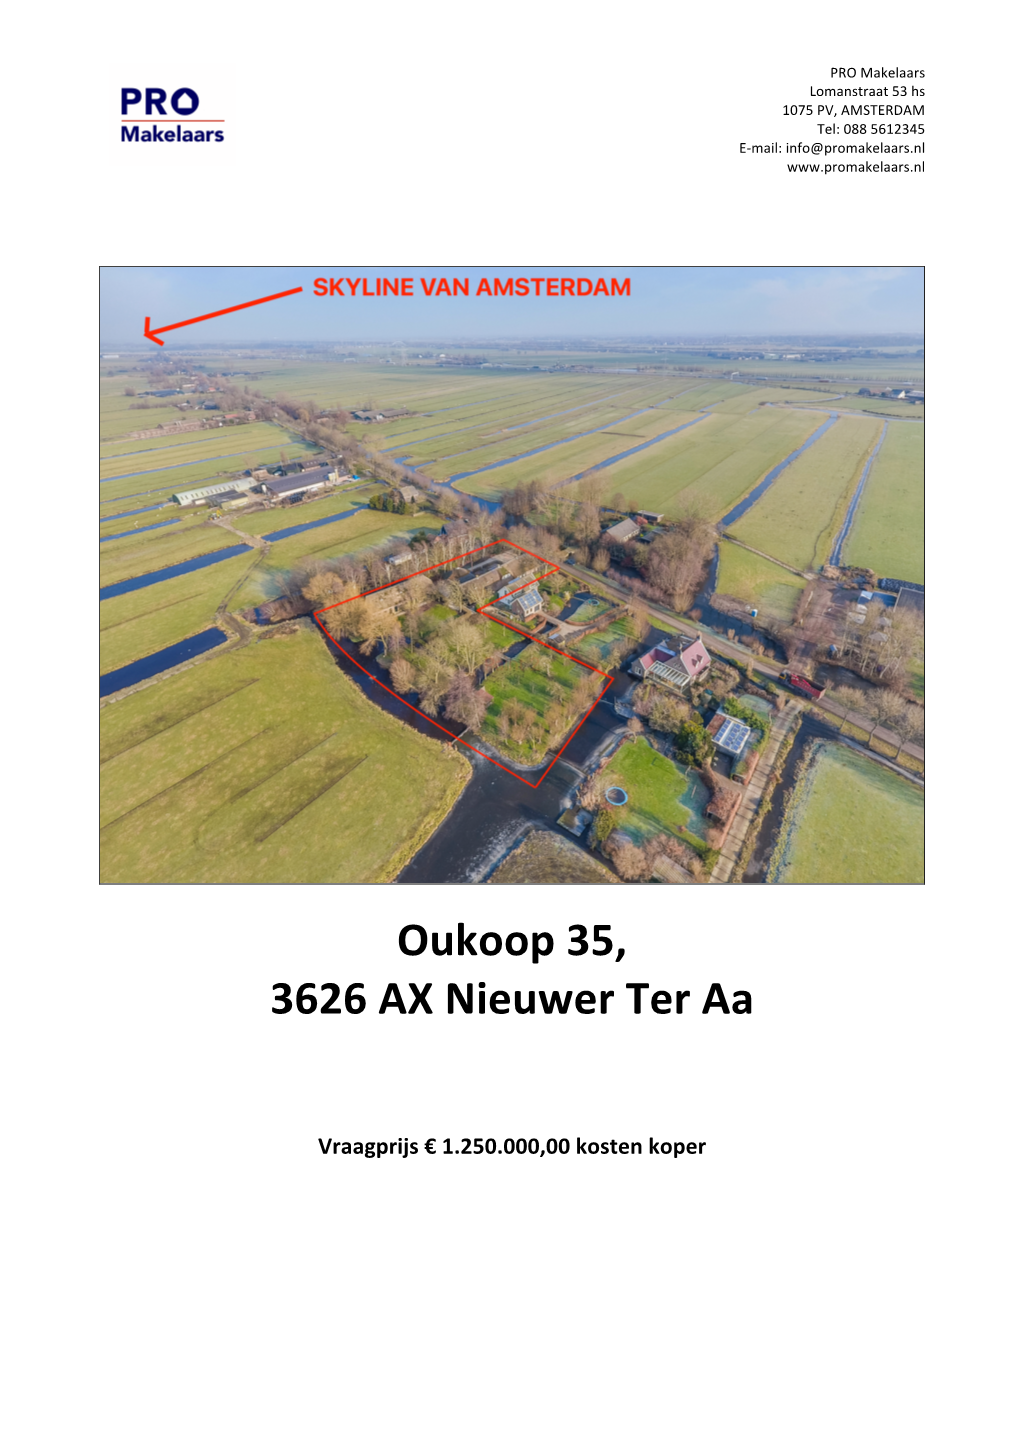 Oukoop 35, 3626 AX Nieuwer Ter Aa